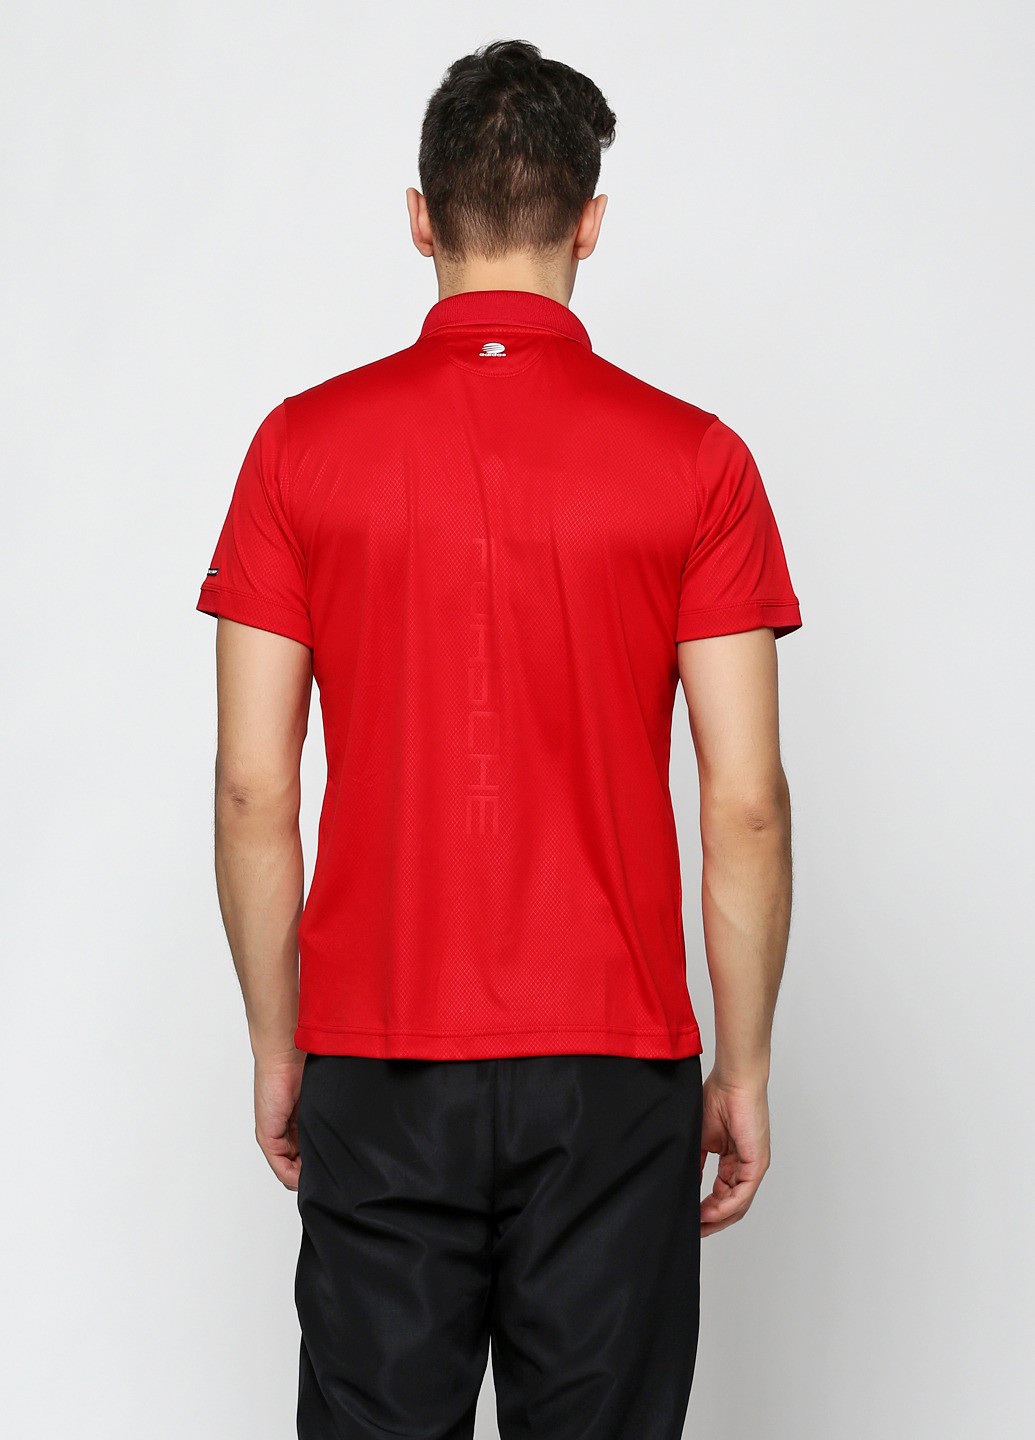 Красная футболка-поло для мужчин Adidas Porsche Design с логотипом